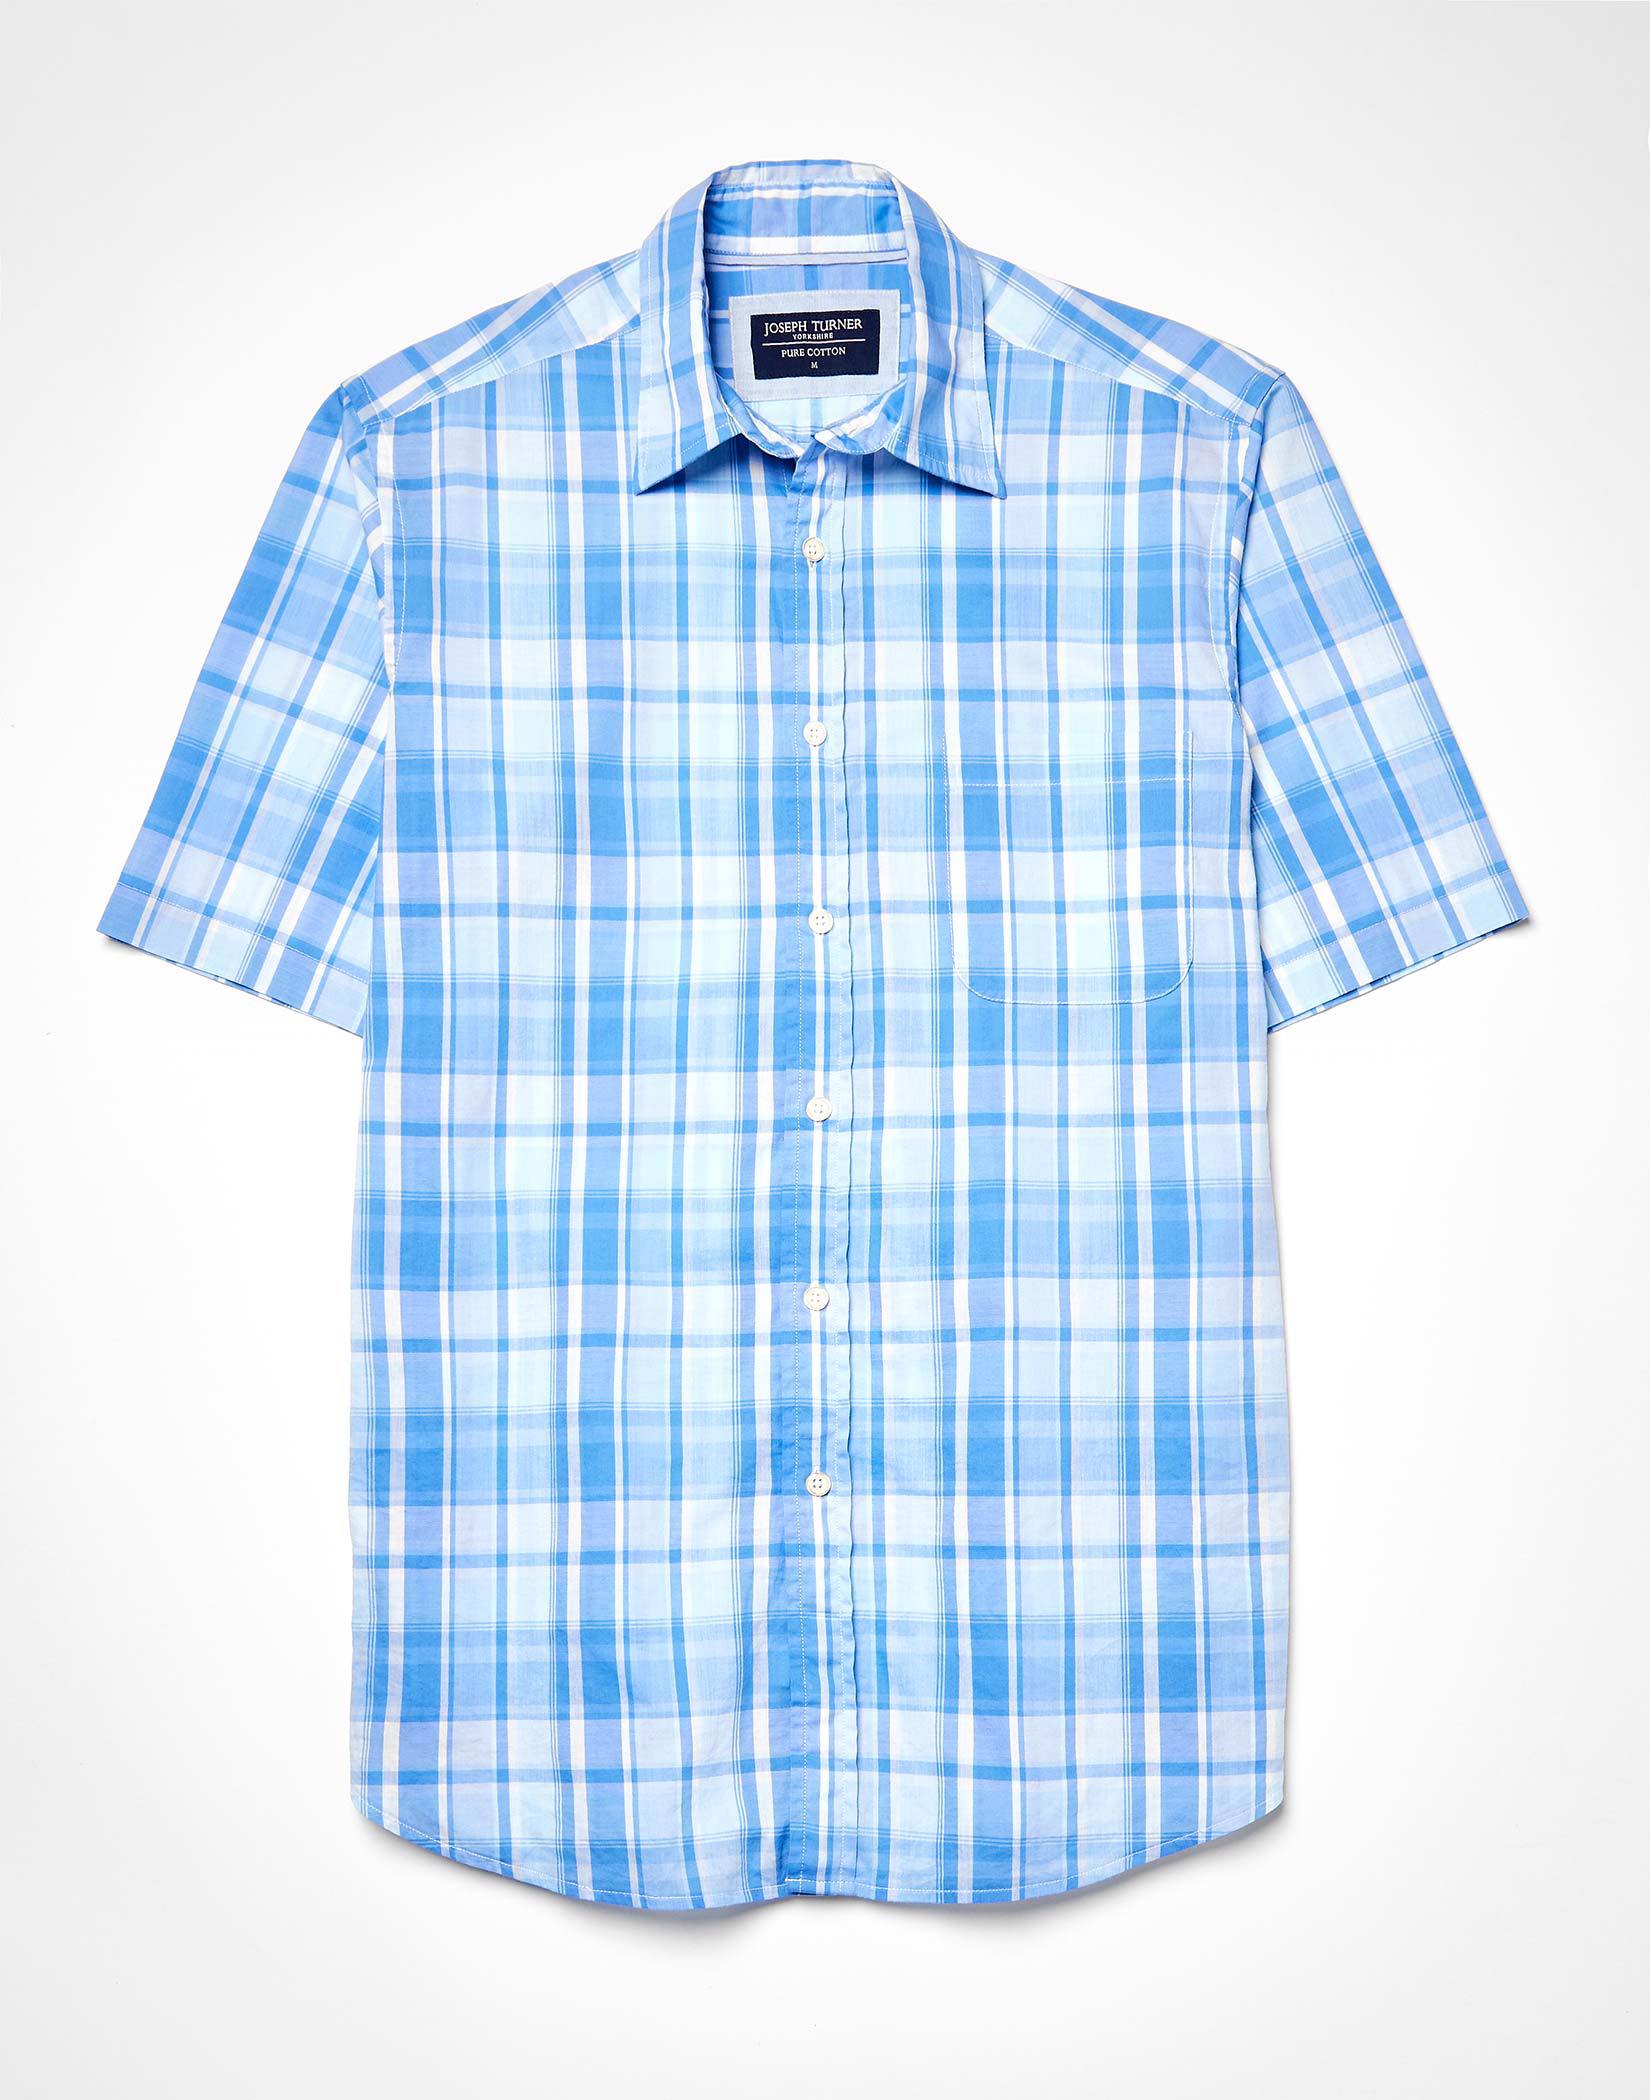 Weekend Shirt Short Sleeve - Blue